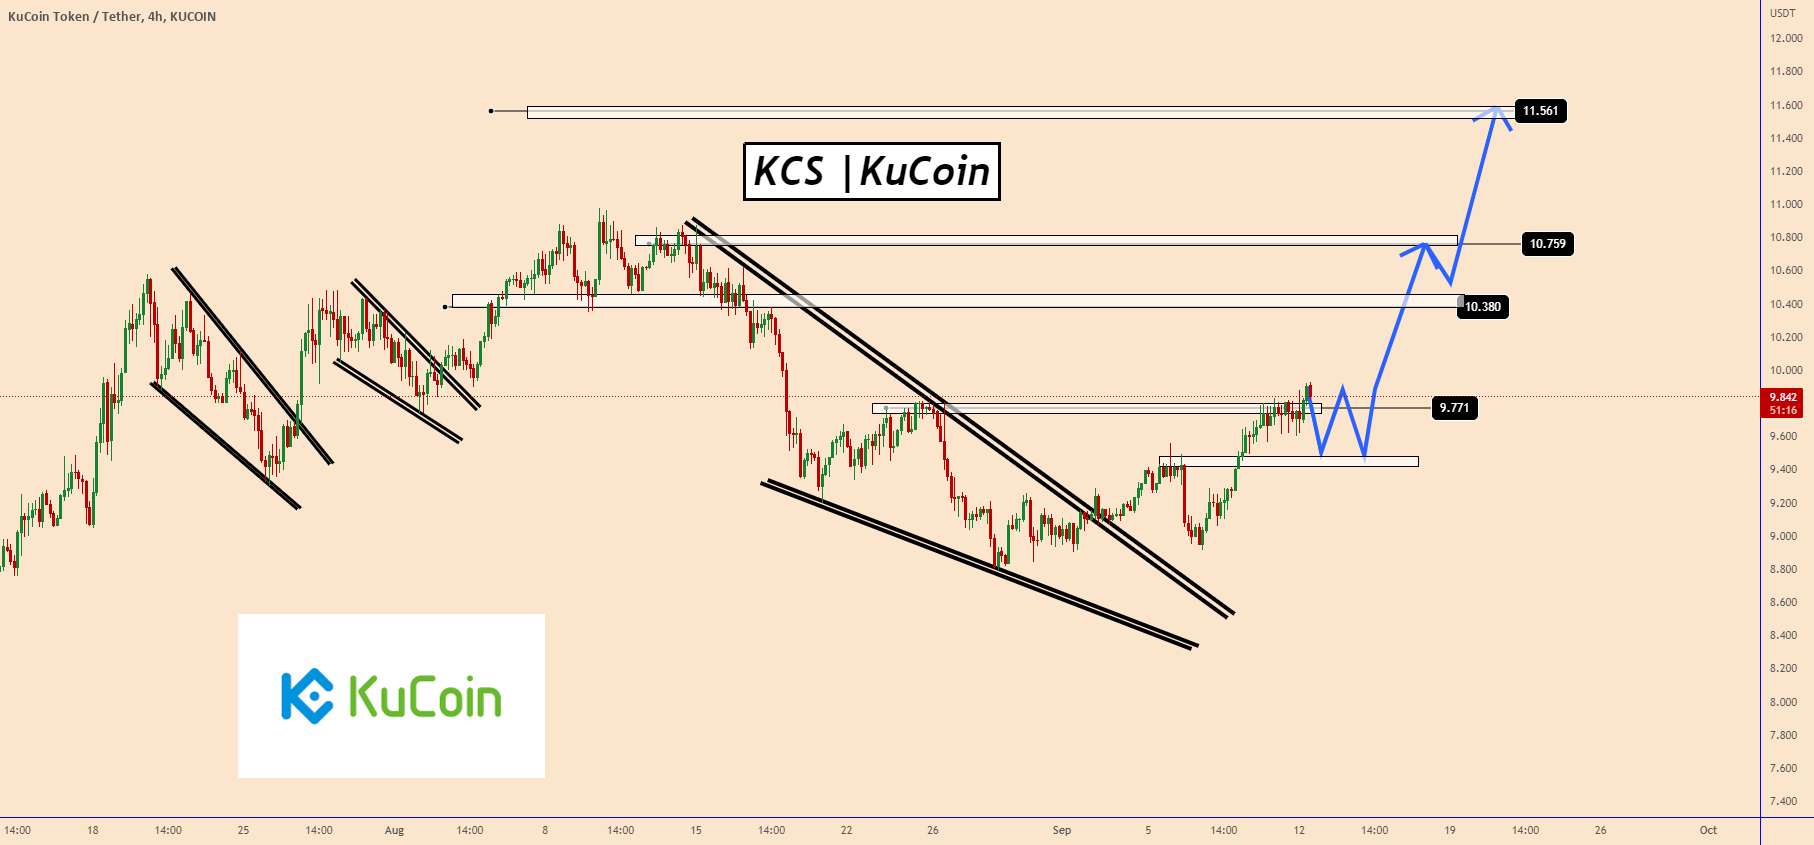 KCS| KuCoin | گاوها قیمت را تحت کنترل دارند